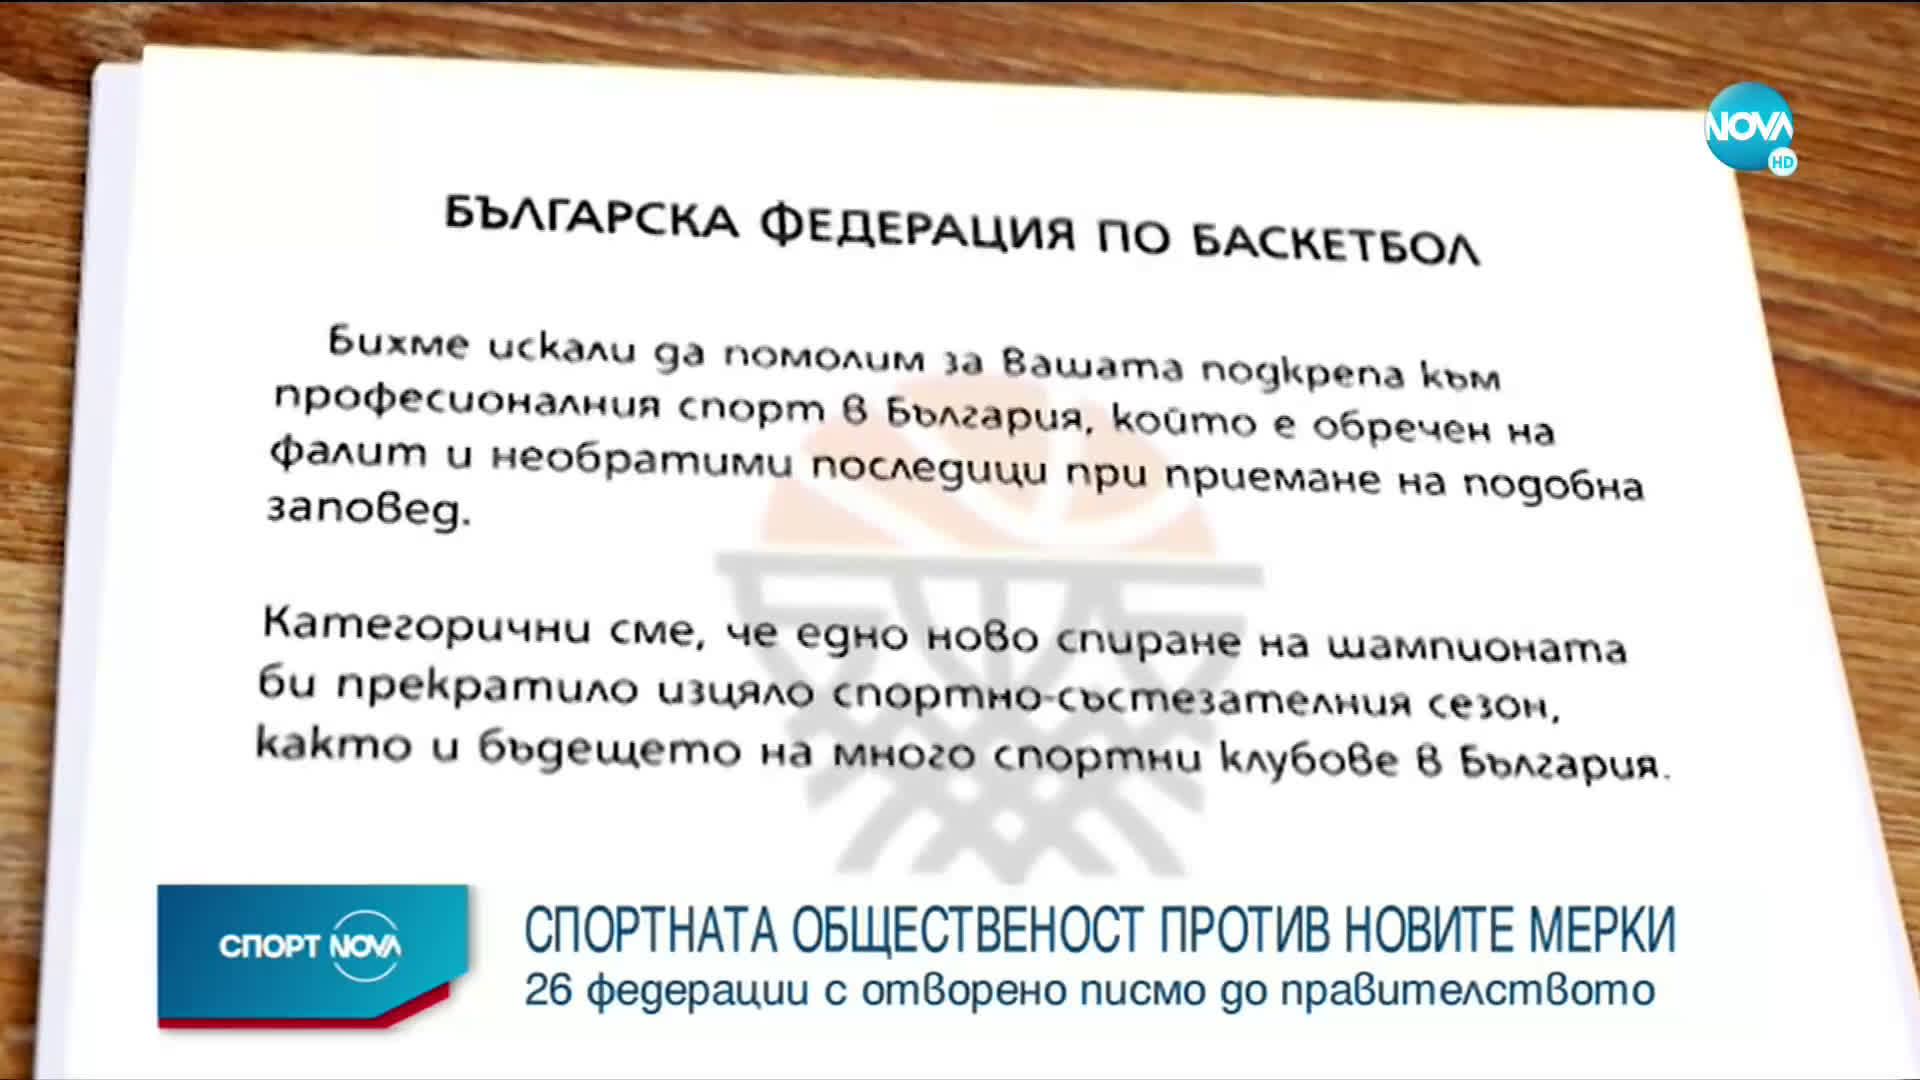 Българският спорт се обедини и изпрати молба до правителството